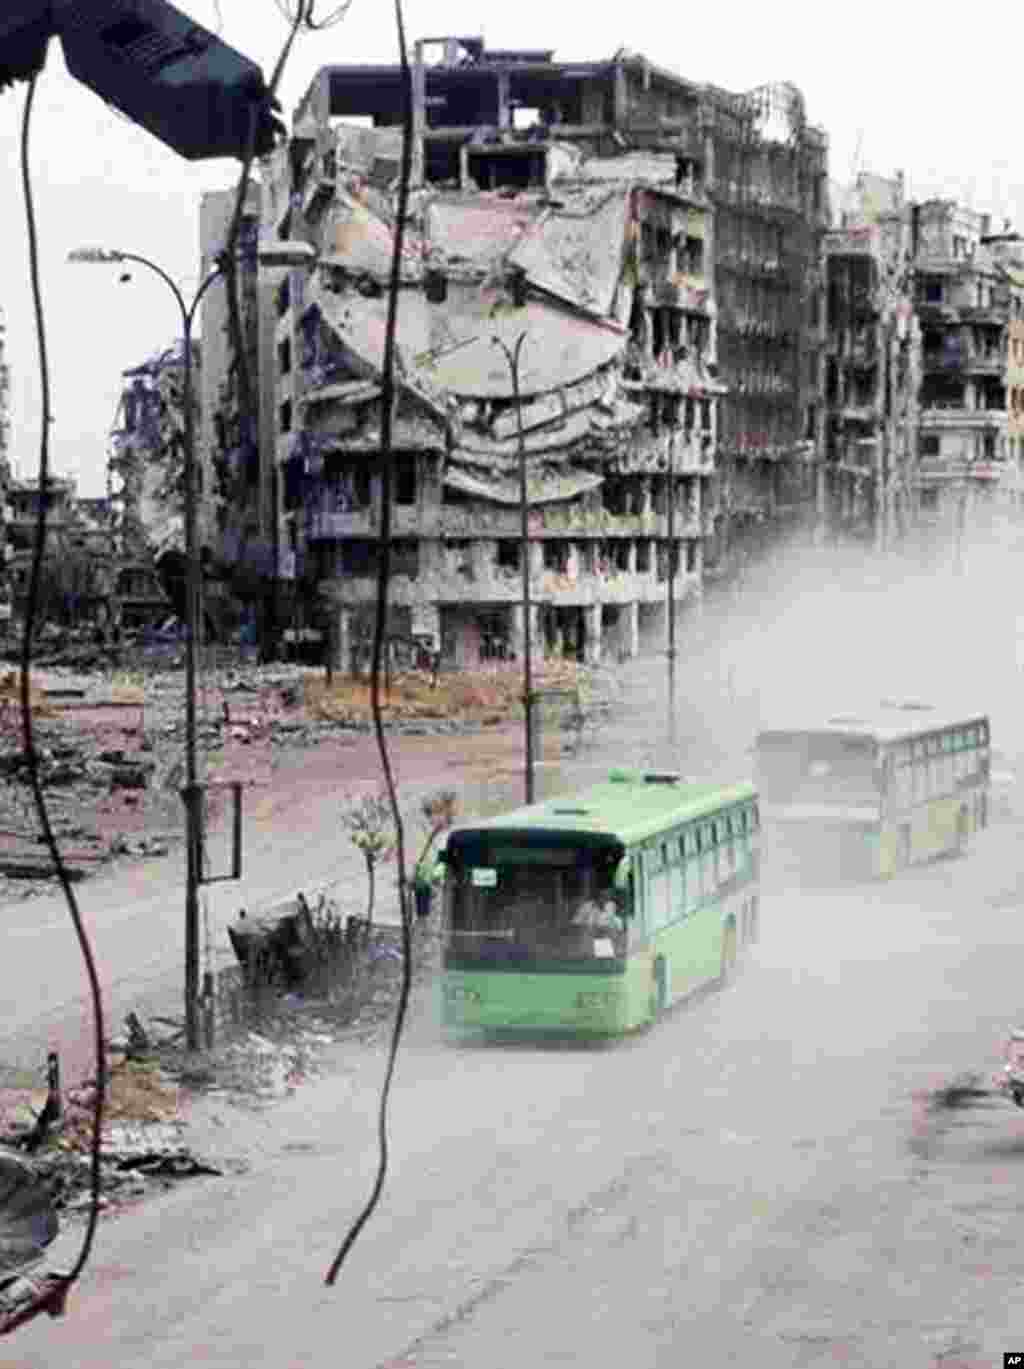 Autobusi za evakuaciju pripadnika Slobodne sirijske vojske iz devastirang Homsa.